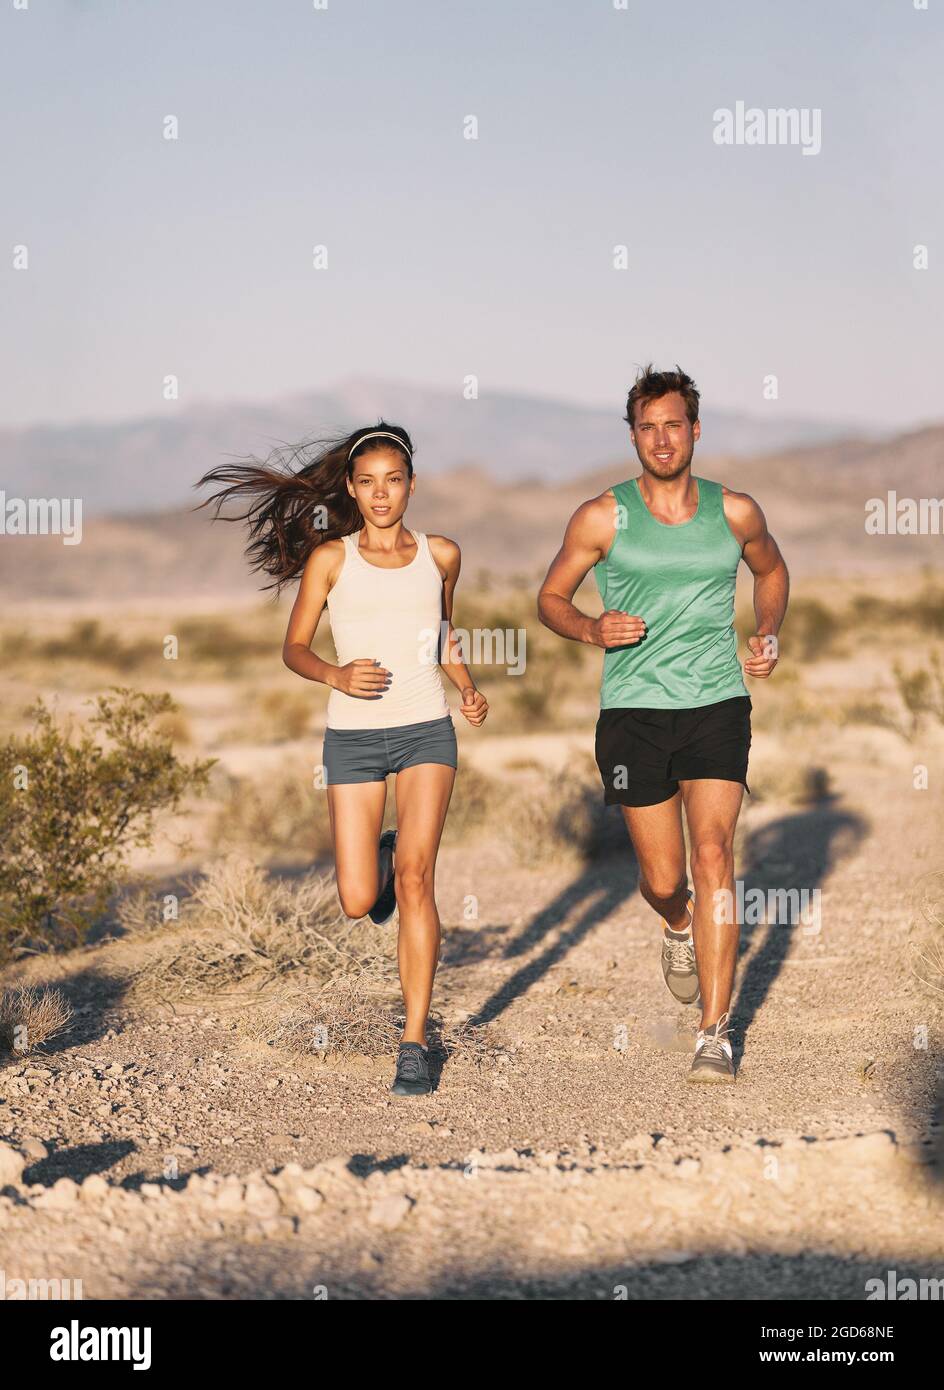 Fotomural Mujer atleta corriendo - mujer trail runner